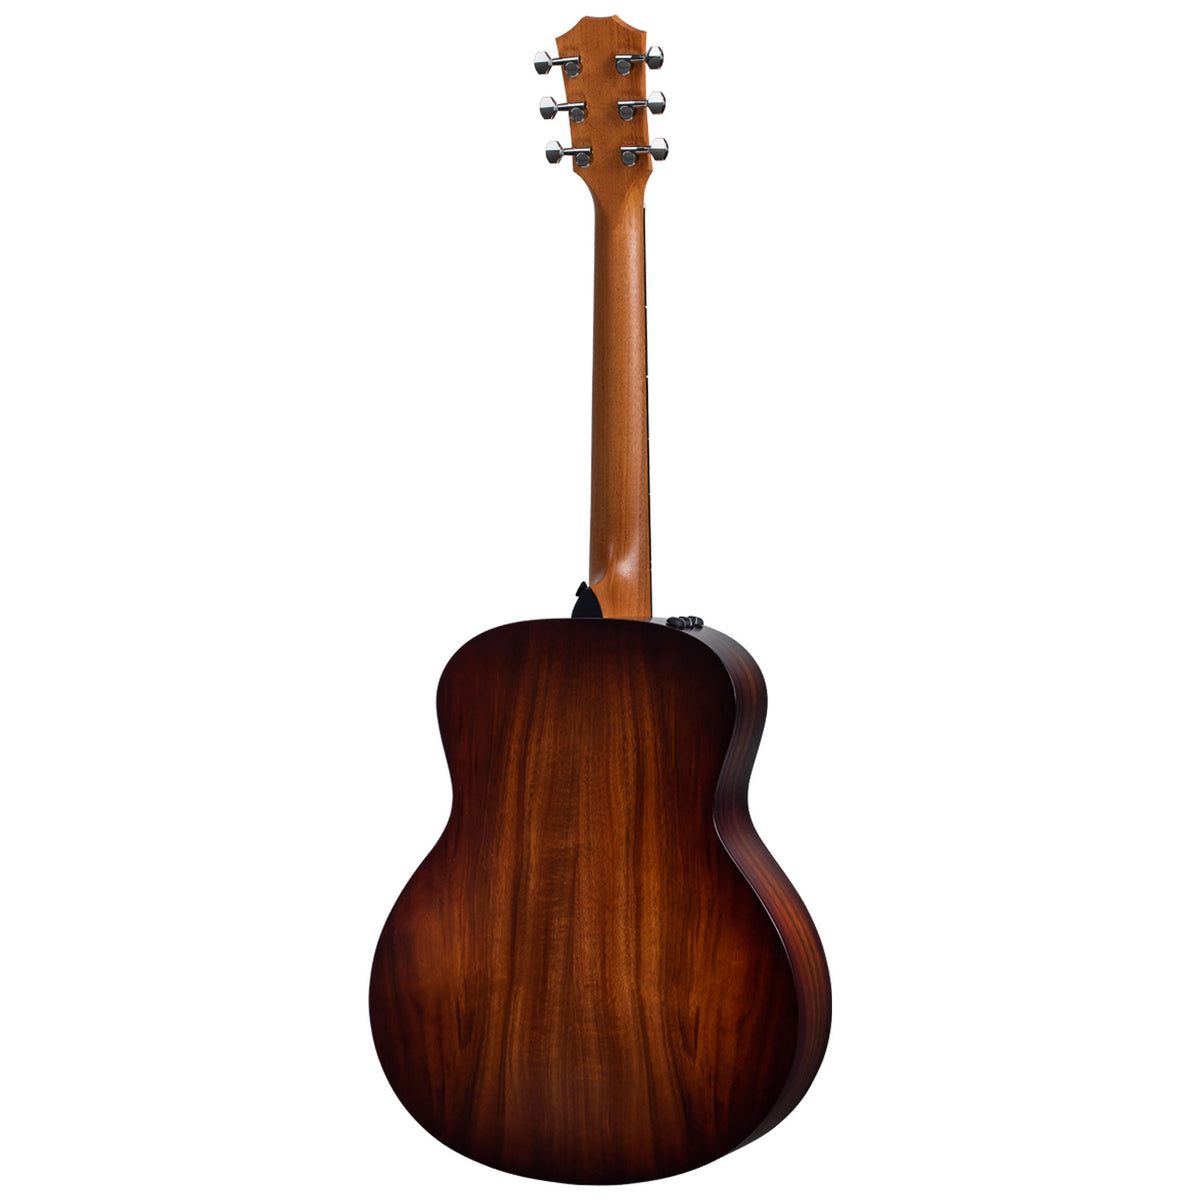 Taylor GS Mini-e Koa Plus Layered Koa Acoustic-Electric Guitar